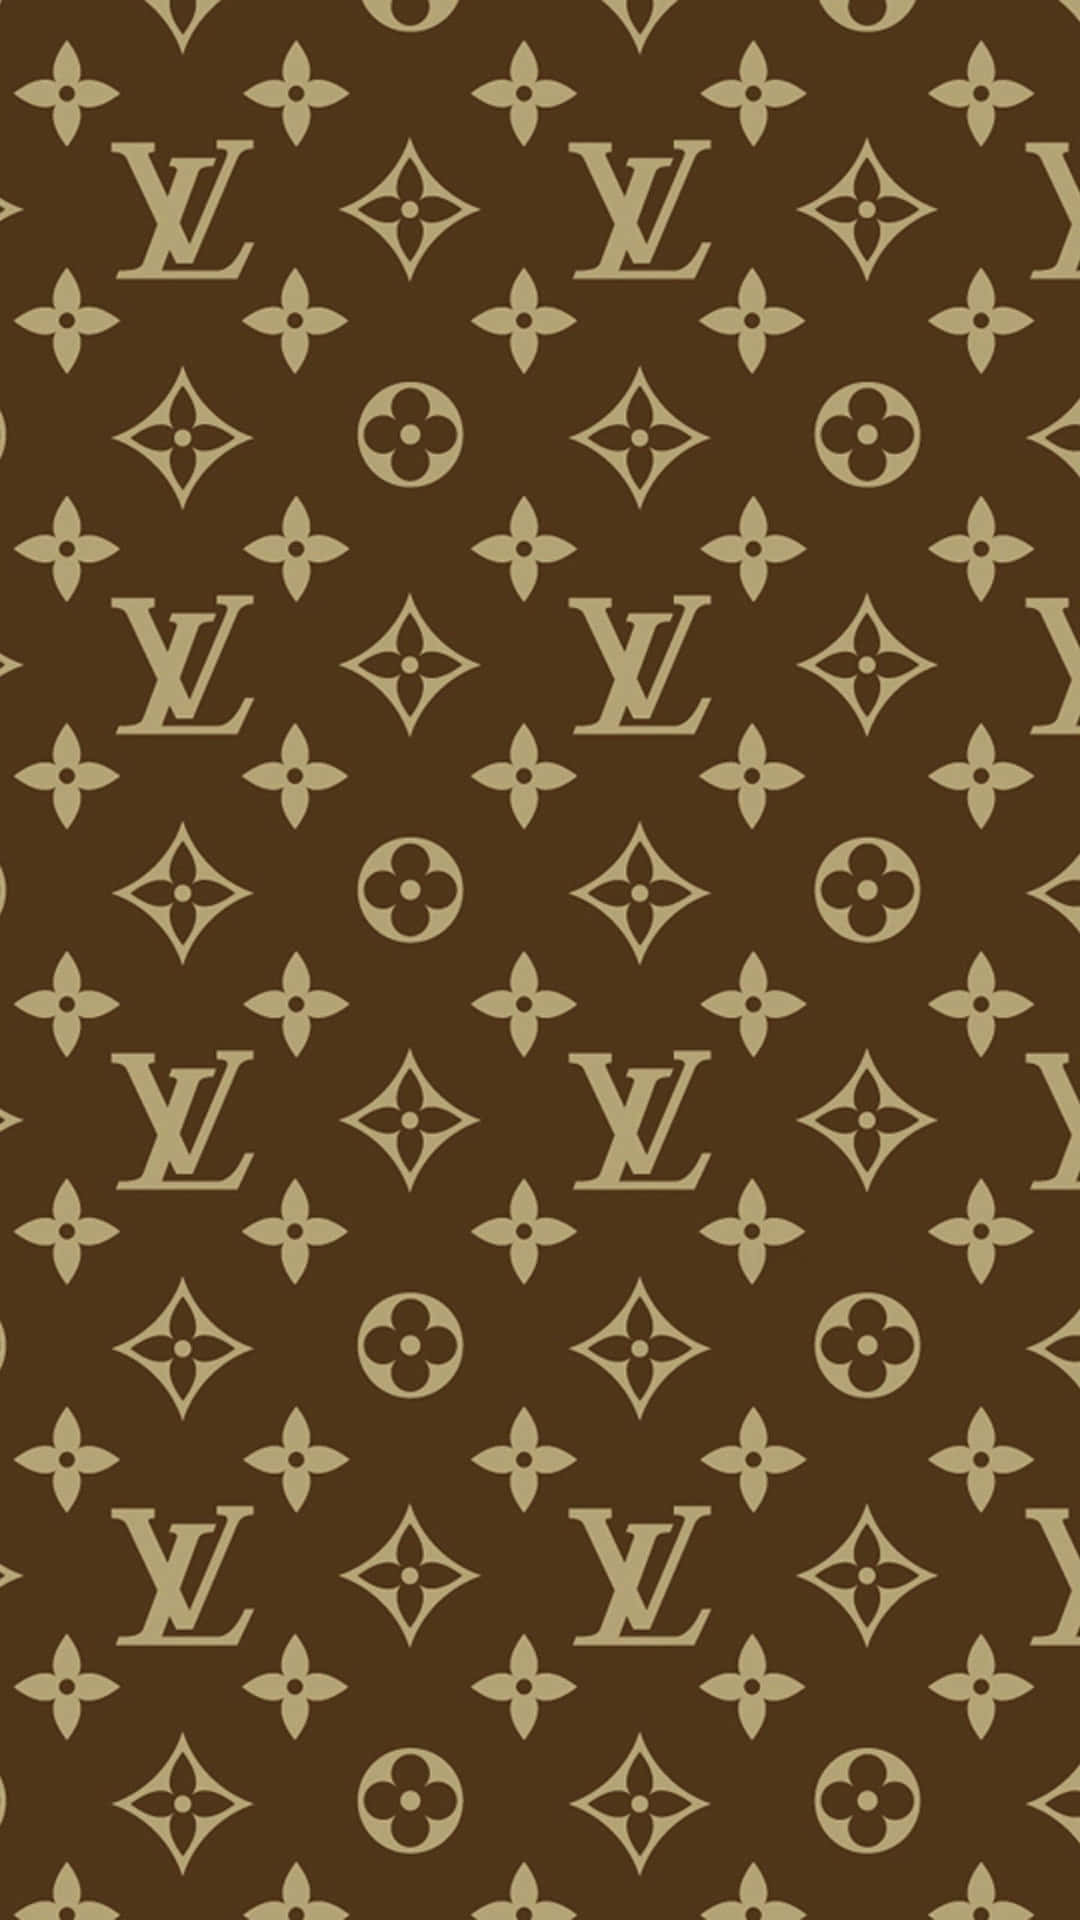 Patrónde Monograma De Louis Vuitton En Color Marrón Y Beige. Fondo de pantalla